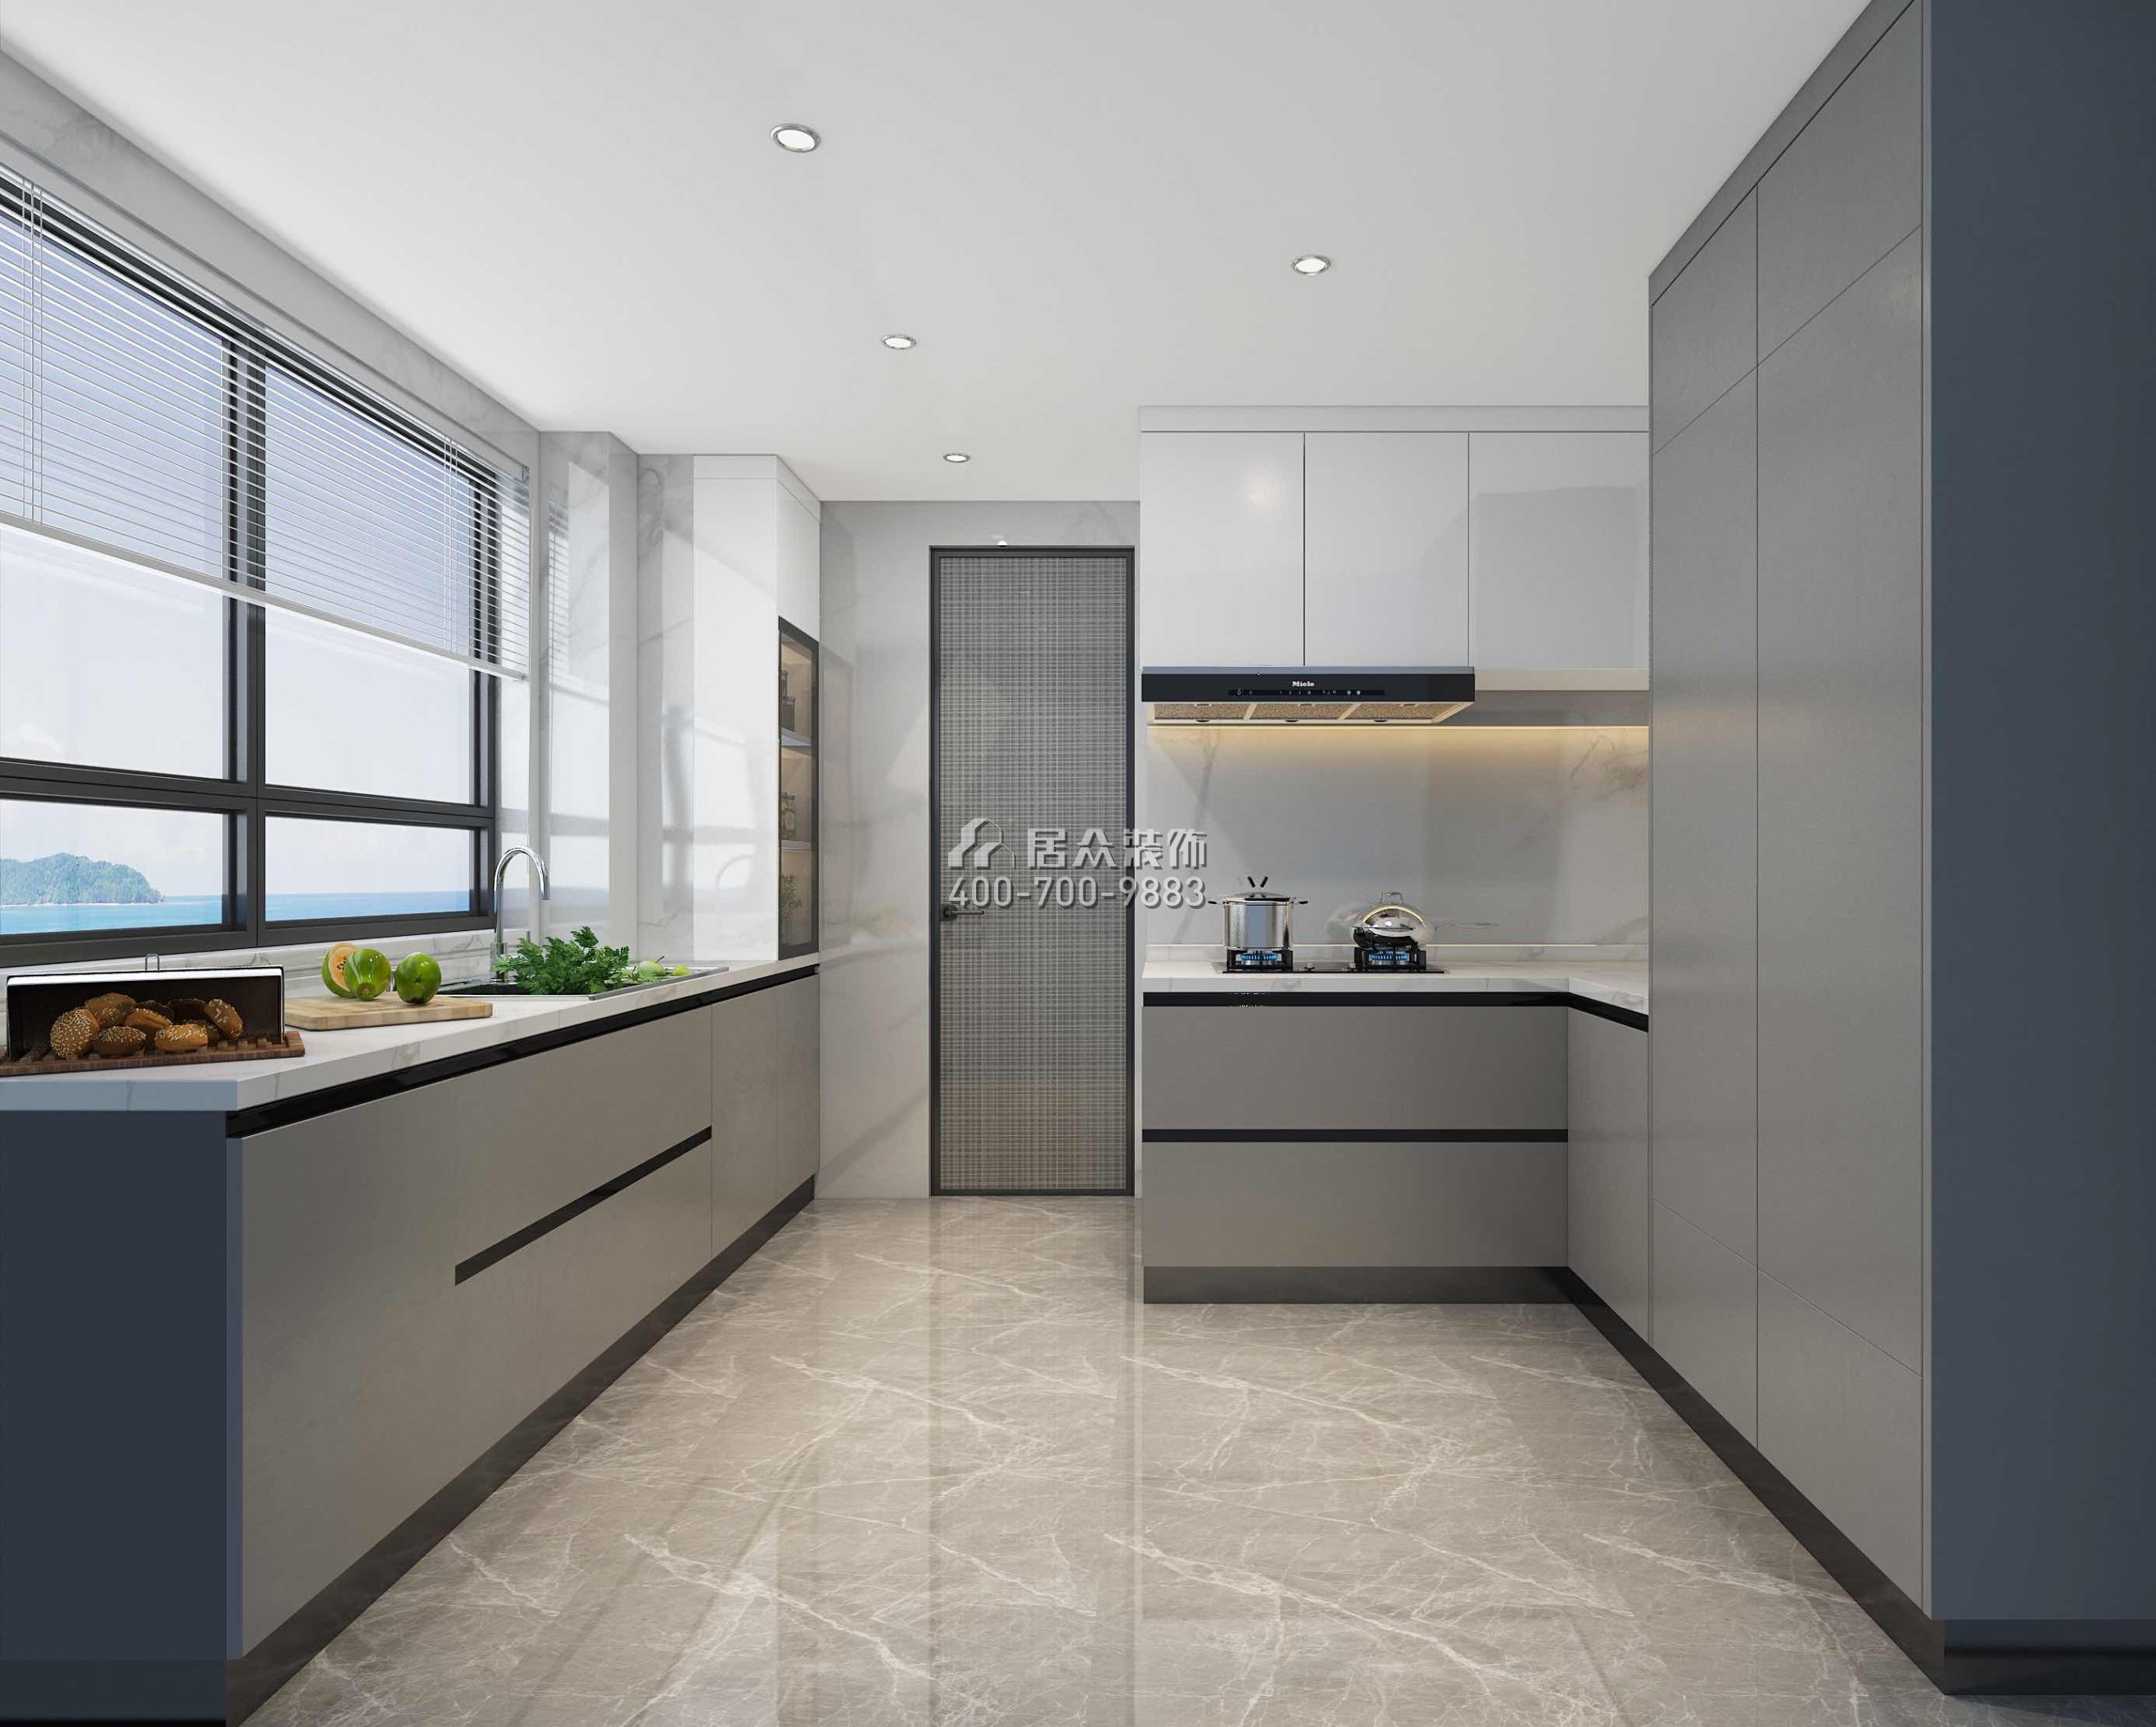 香山美墅五期170平方米現代簡約風格平層戶型廚房裝修效果圖